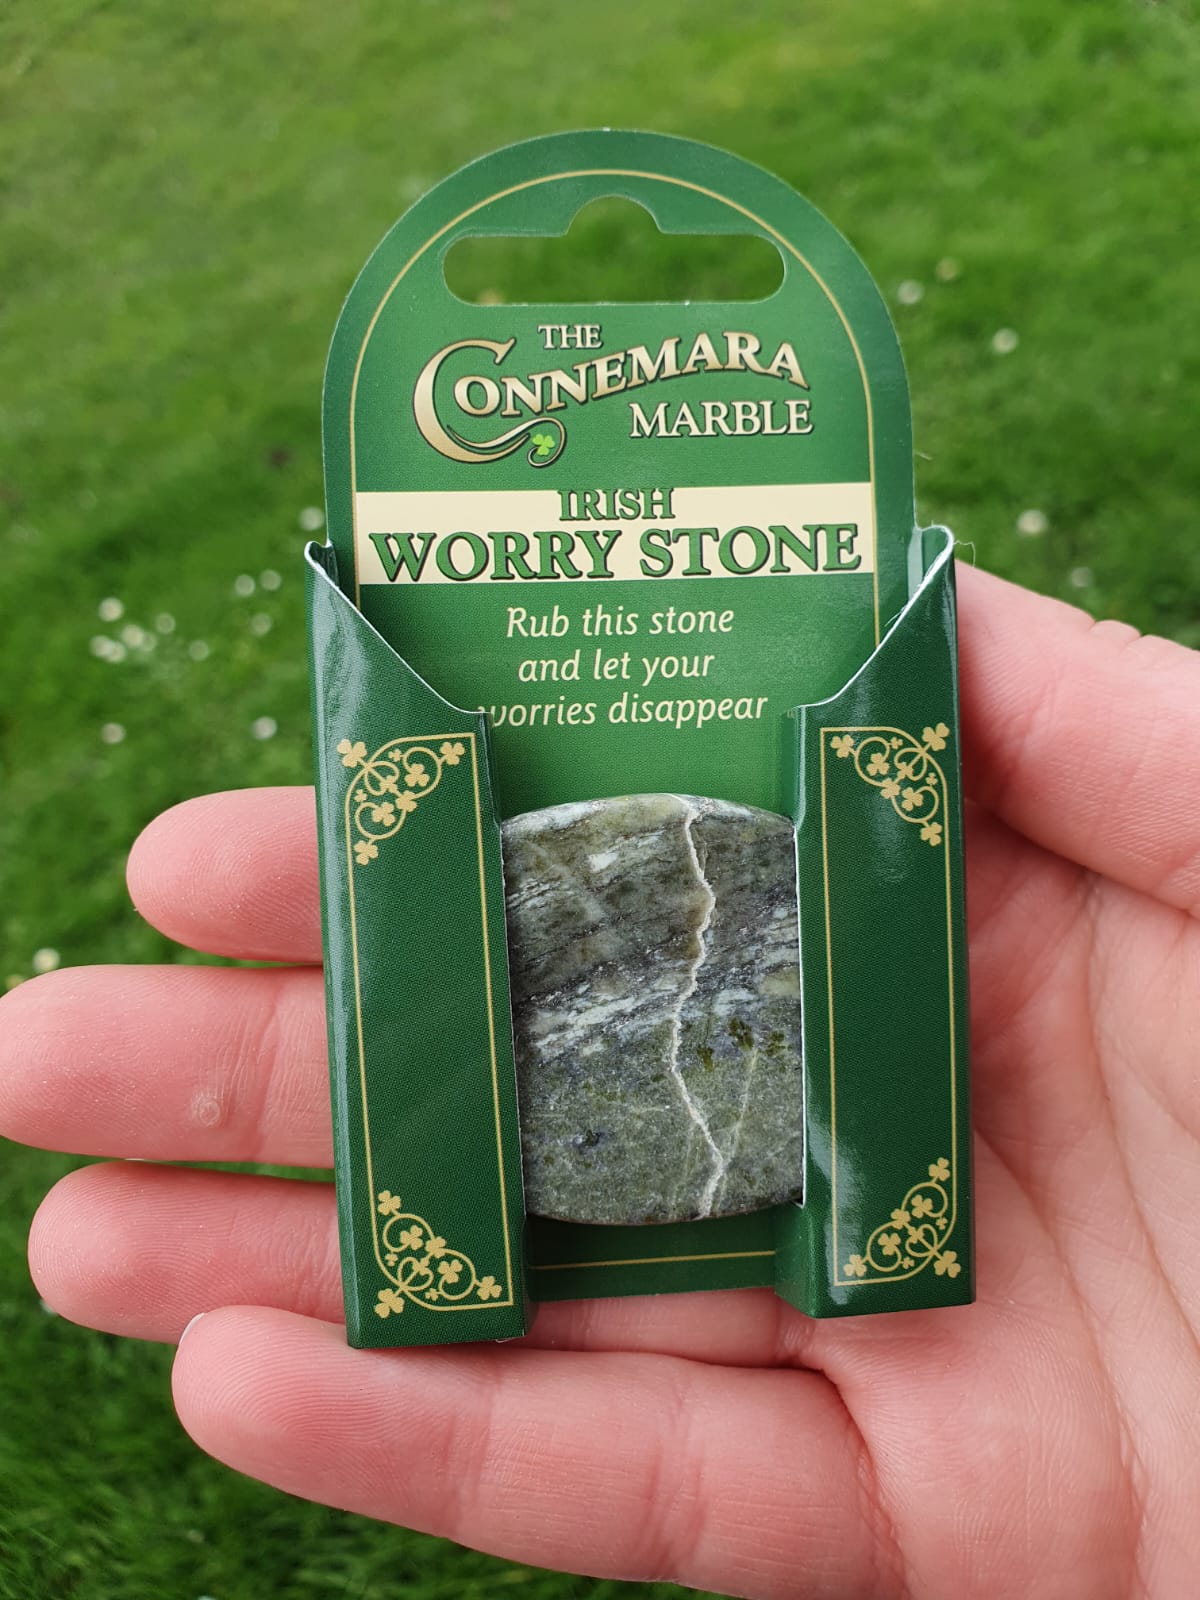 Connemara Marble Irish Worry Stone